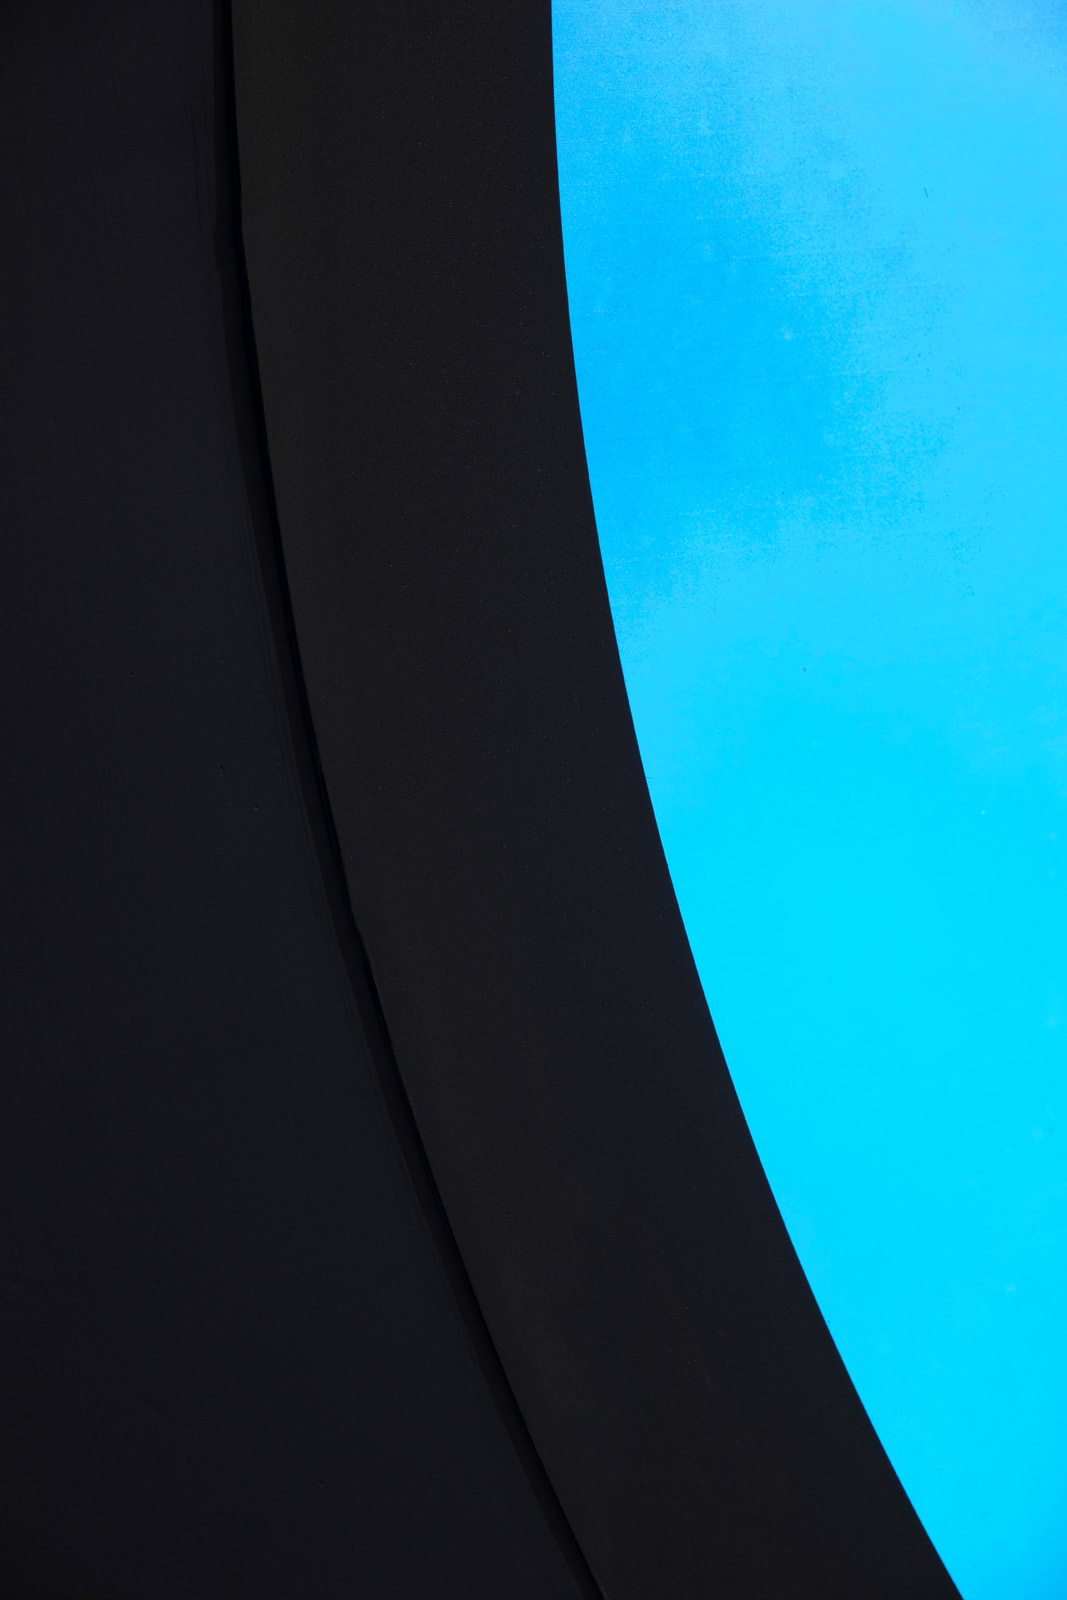 Bioluminescent Portals (detail)